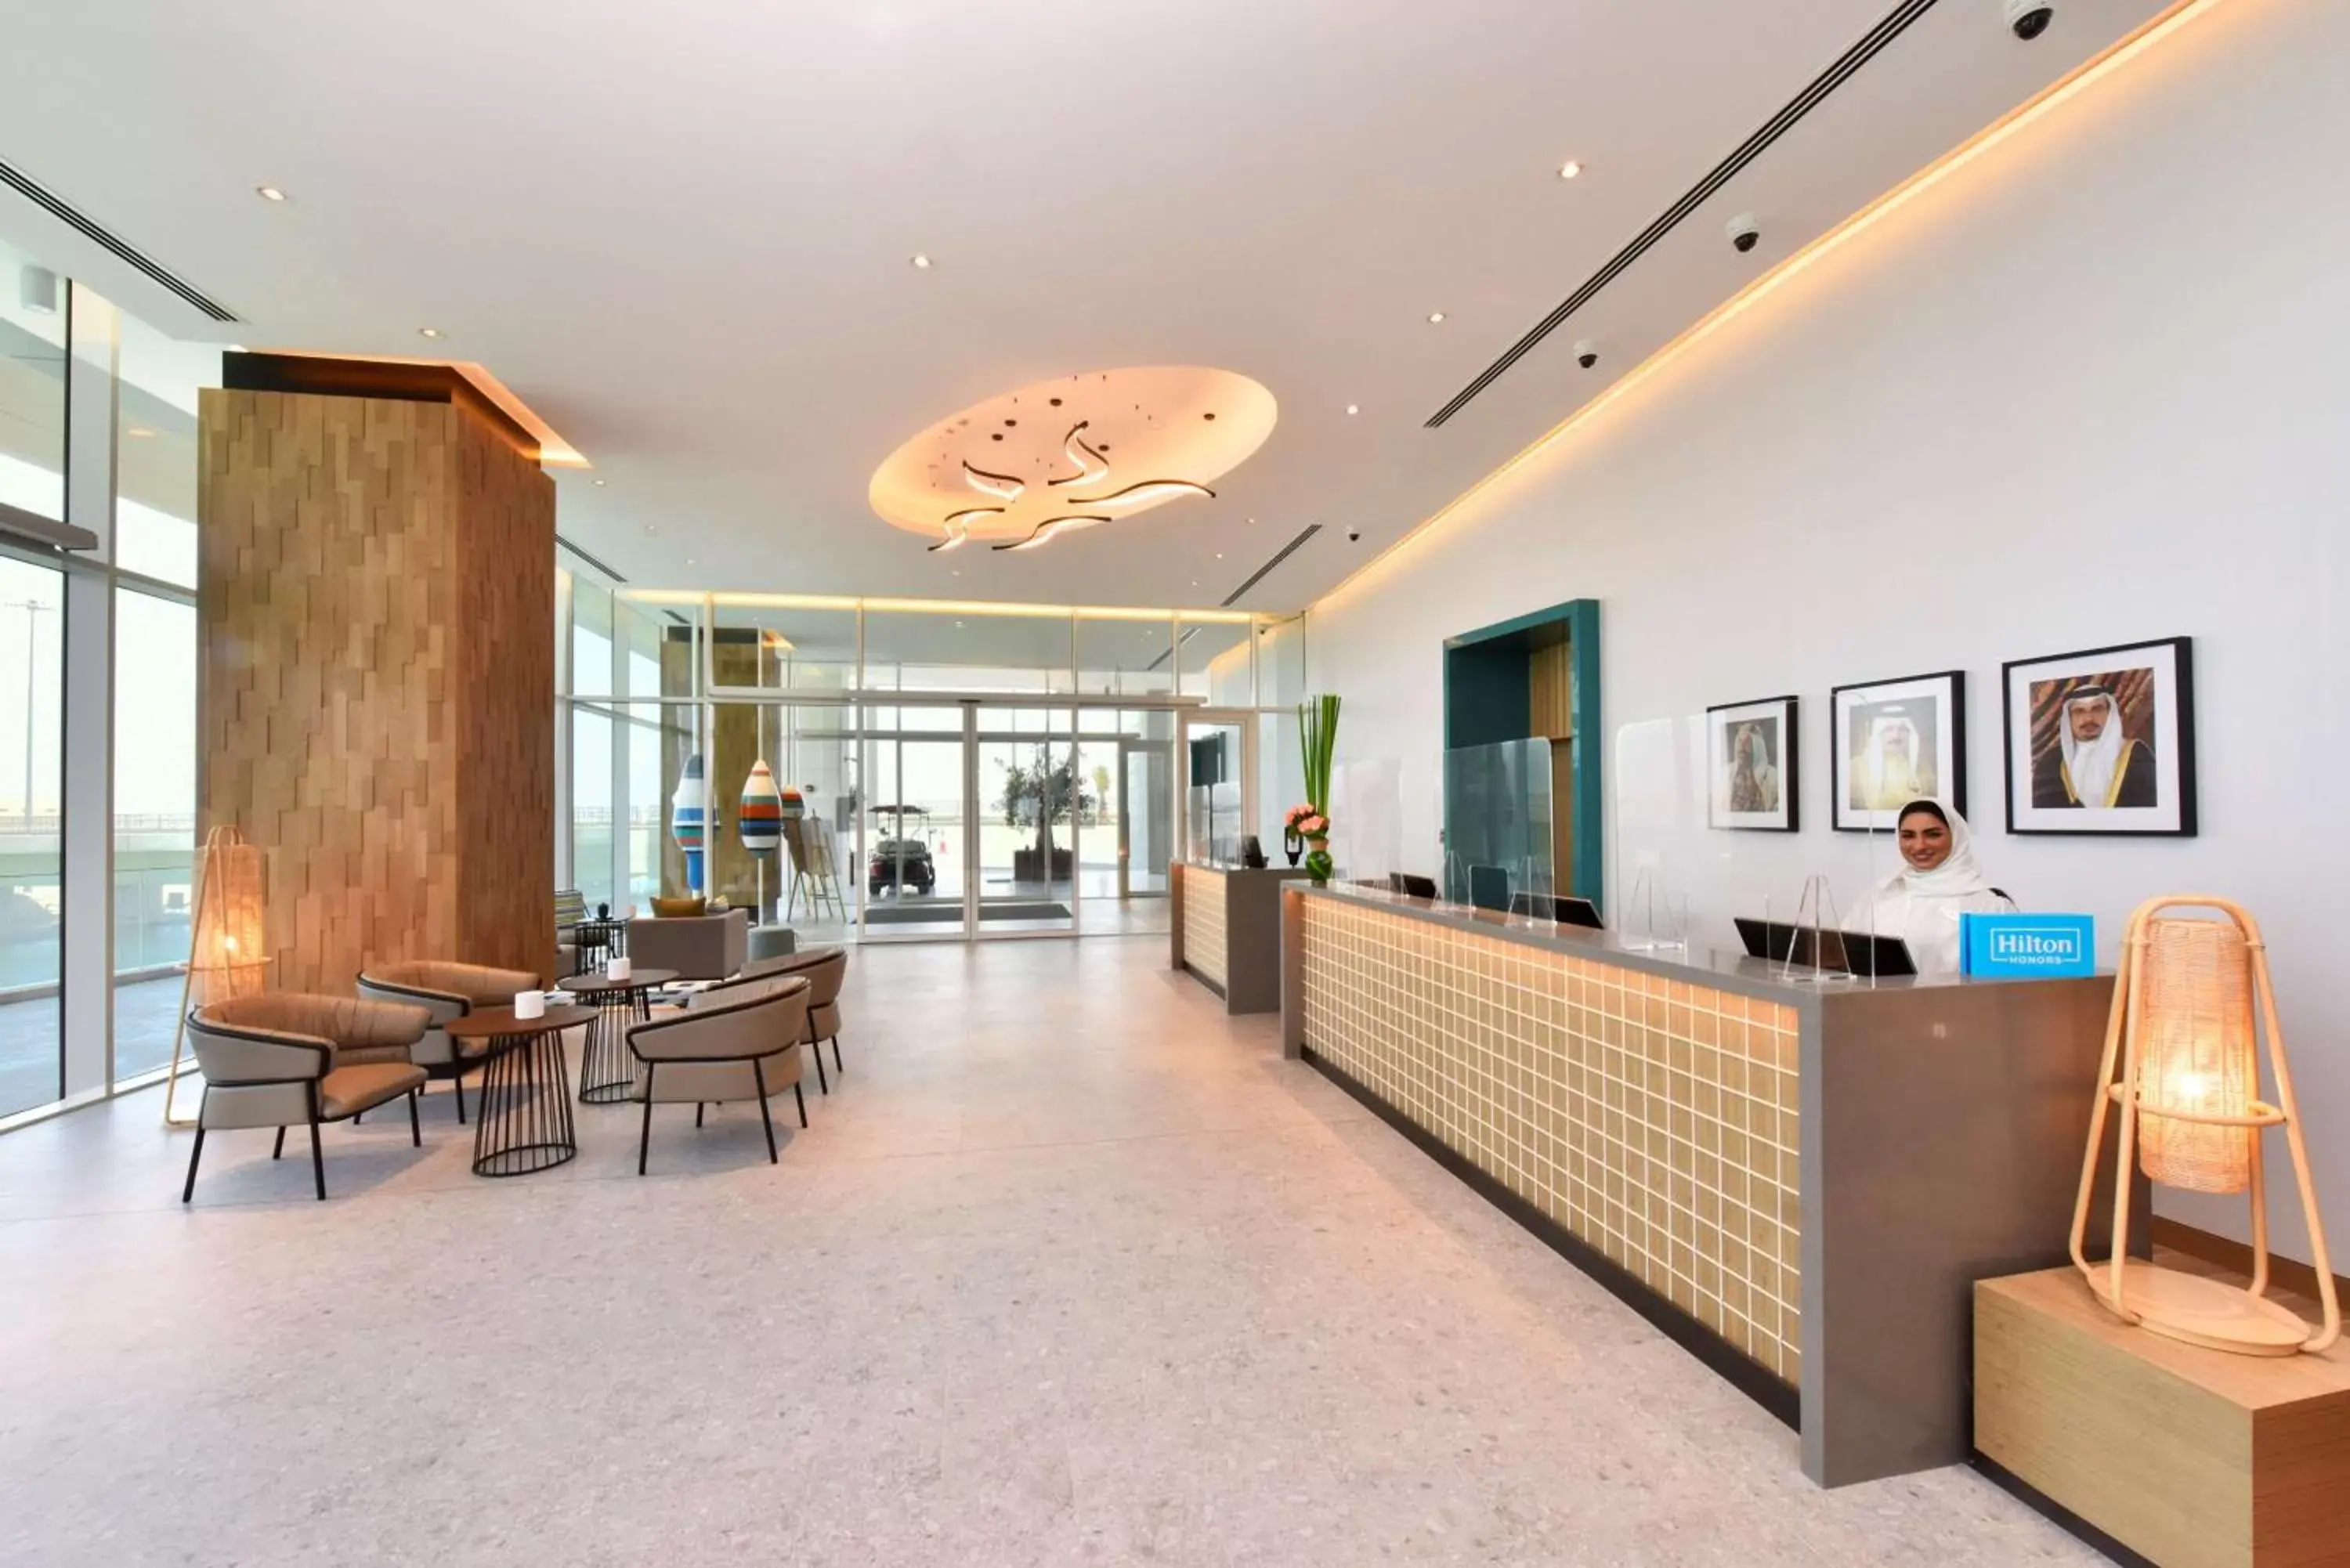 Lobby or reception in Hilton Garden Inn Bahrain Bay